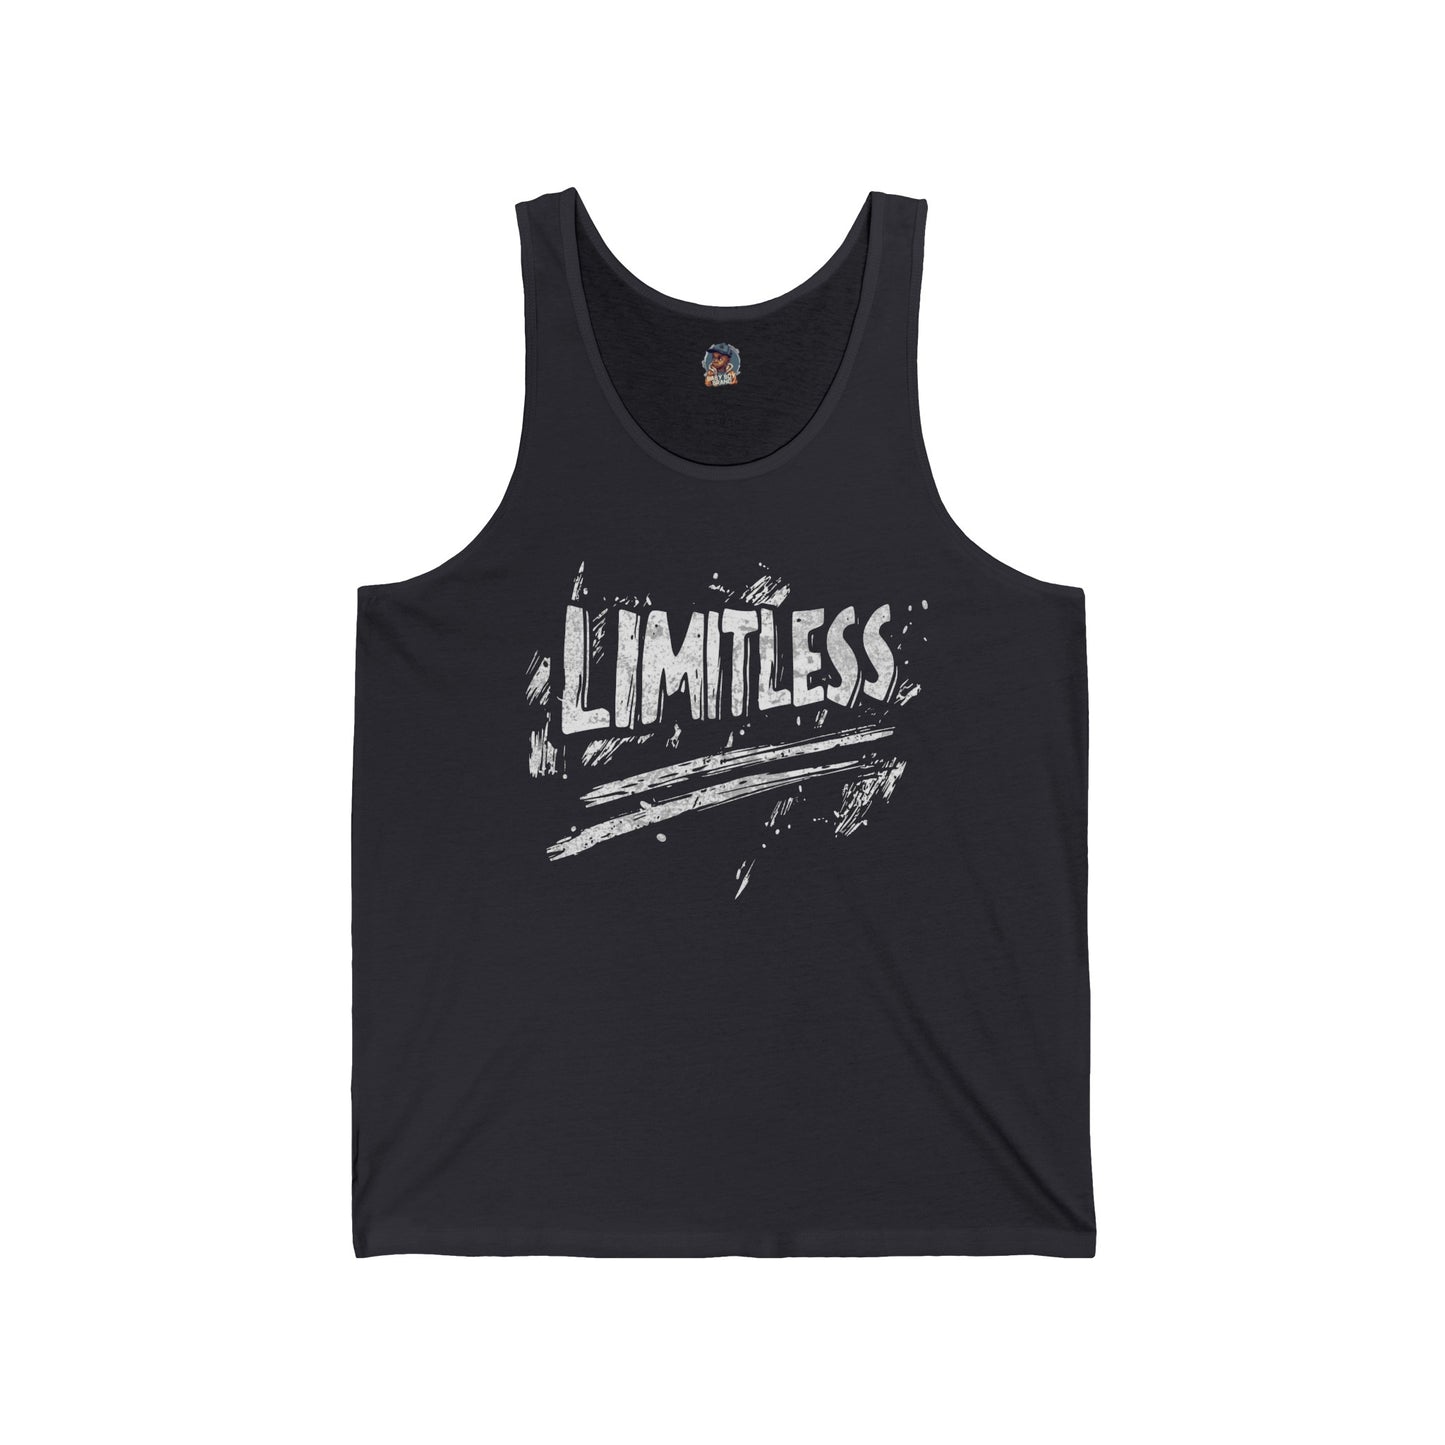 "Limitless"